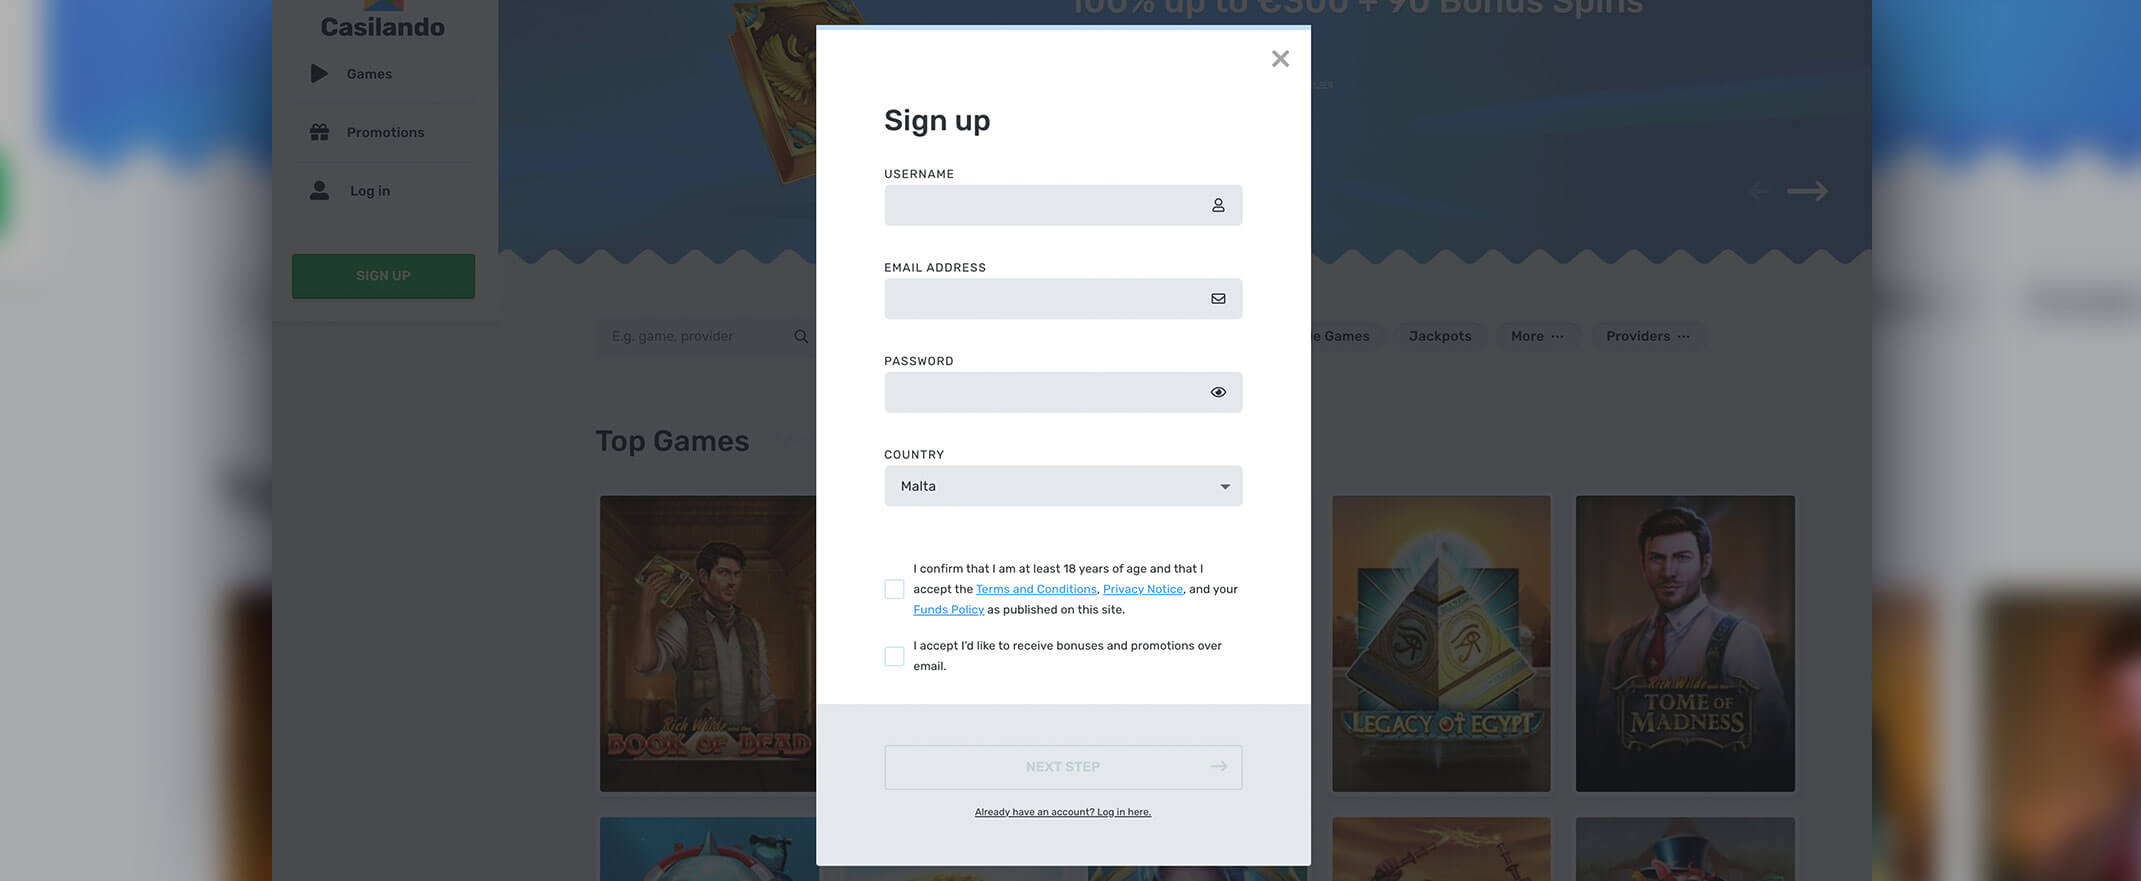 Casilando registration screenshot